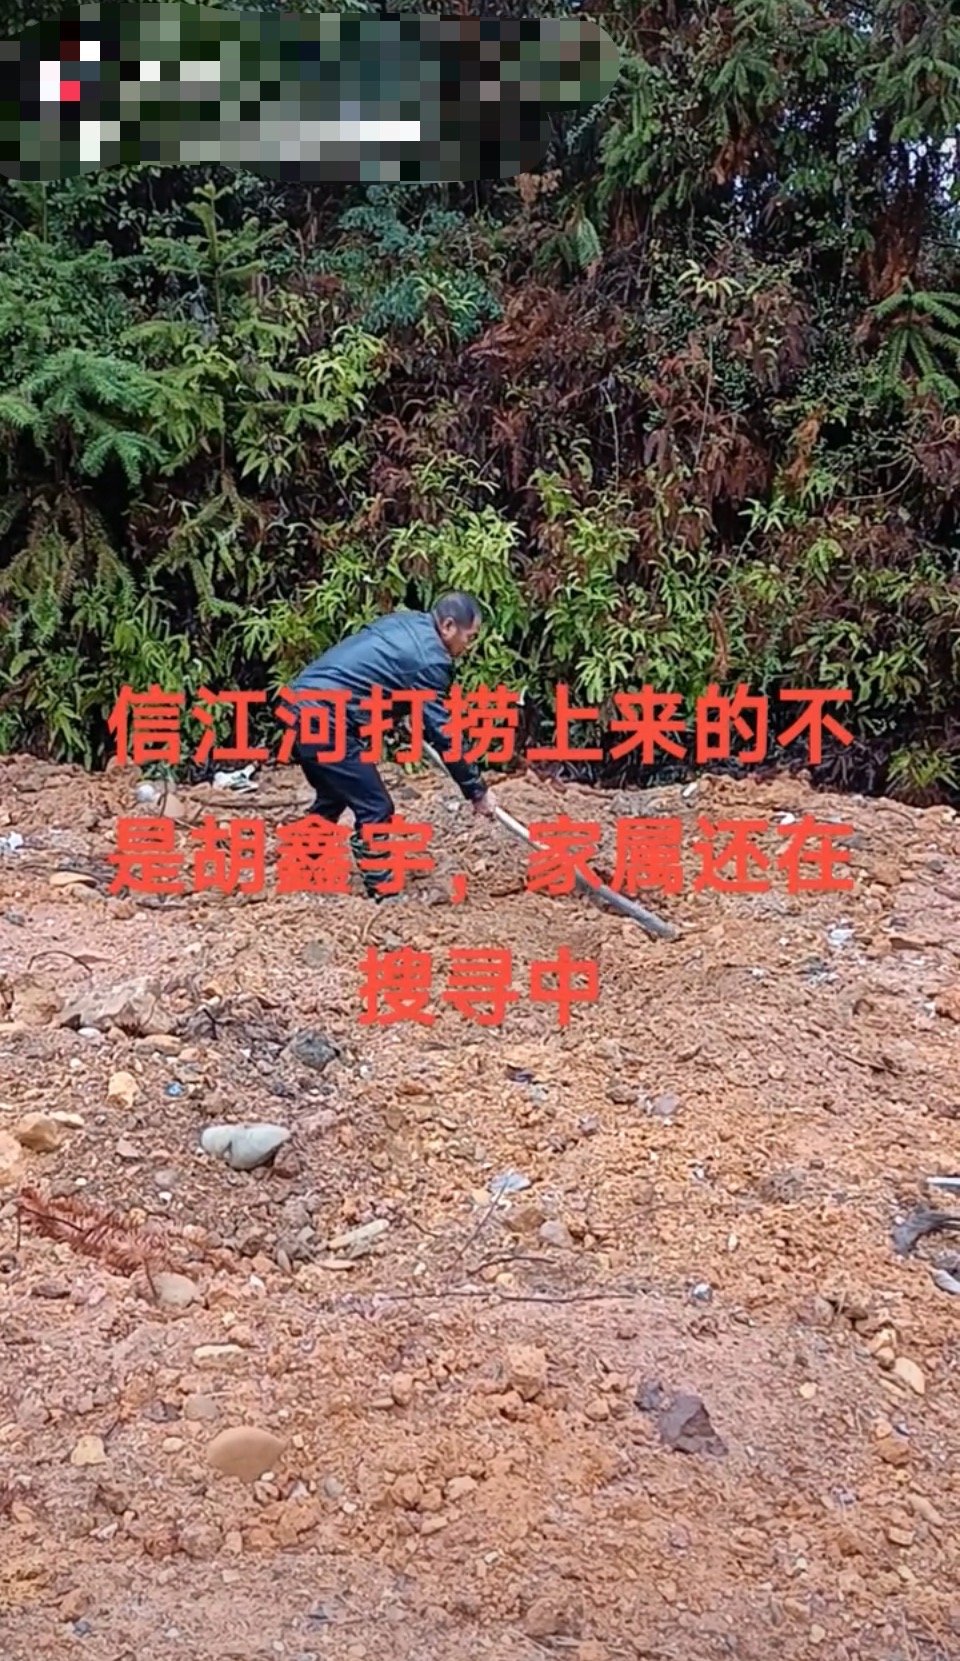 21日，胡鑫宇的亲属在社交媒体辟谣。图片源自网络